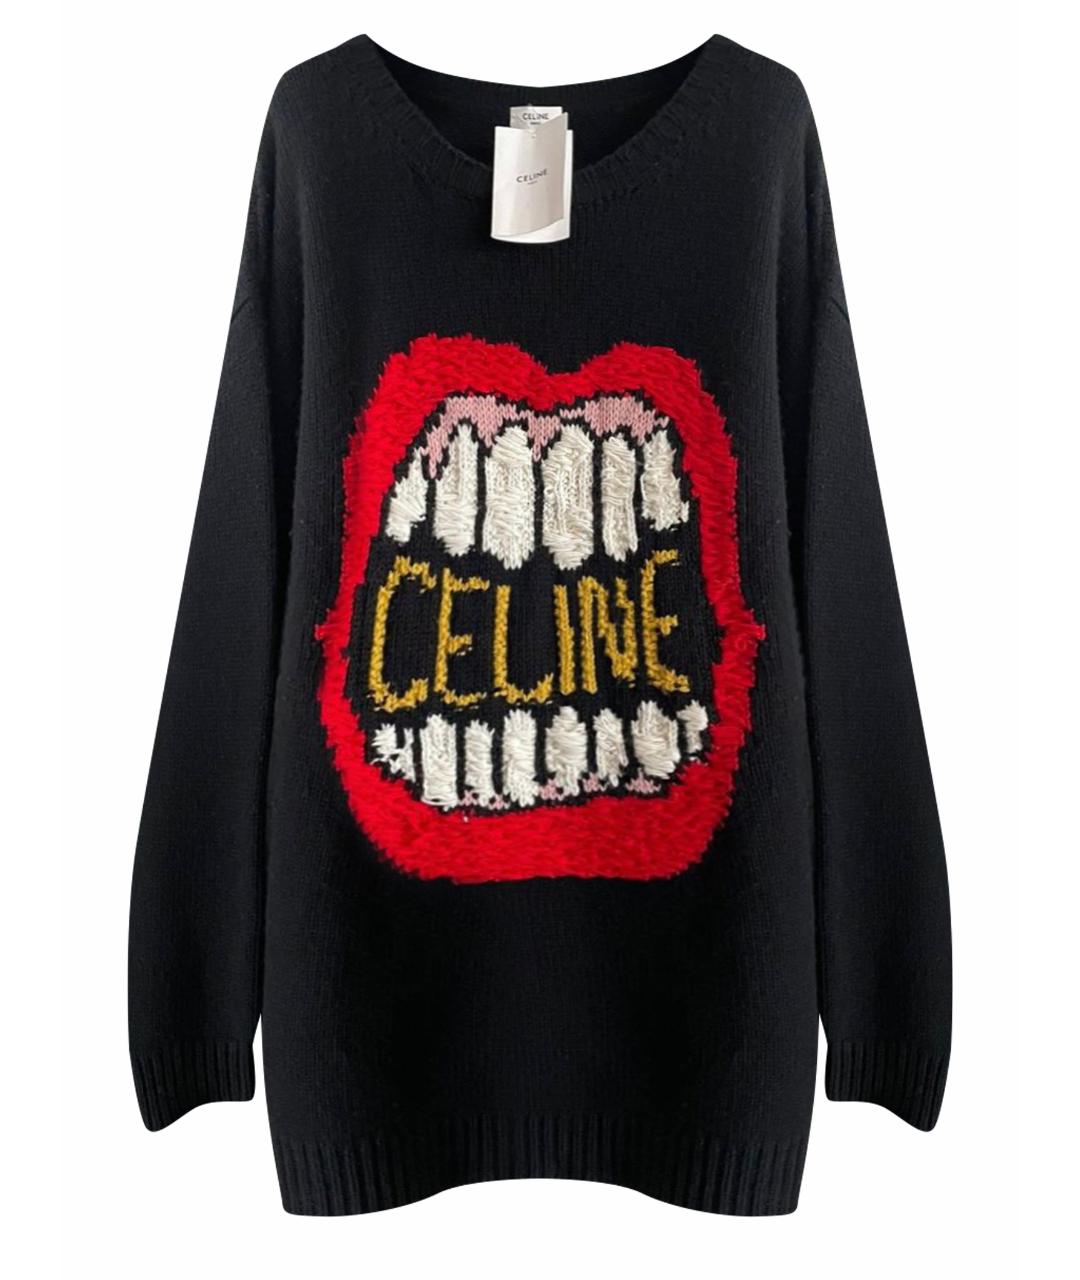 CELINE PRE-OWNED Черный шерстяной джемпер / свитер, фото 1